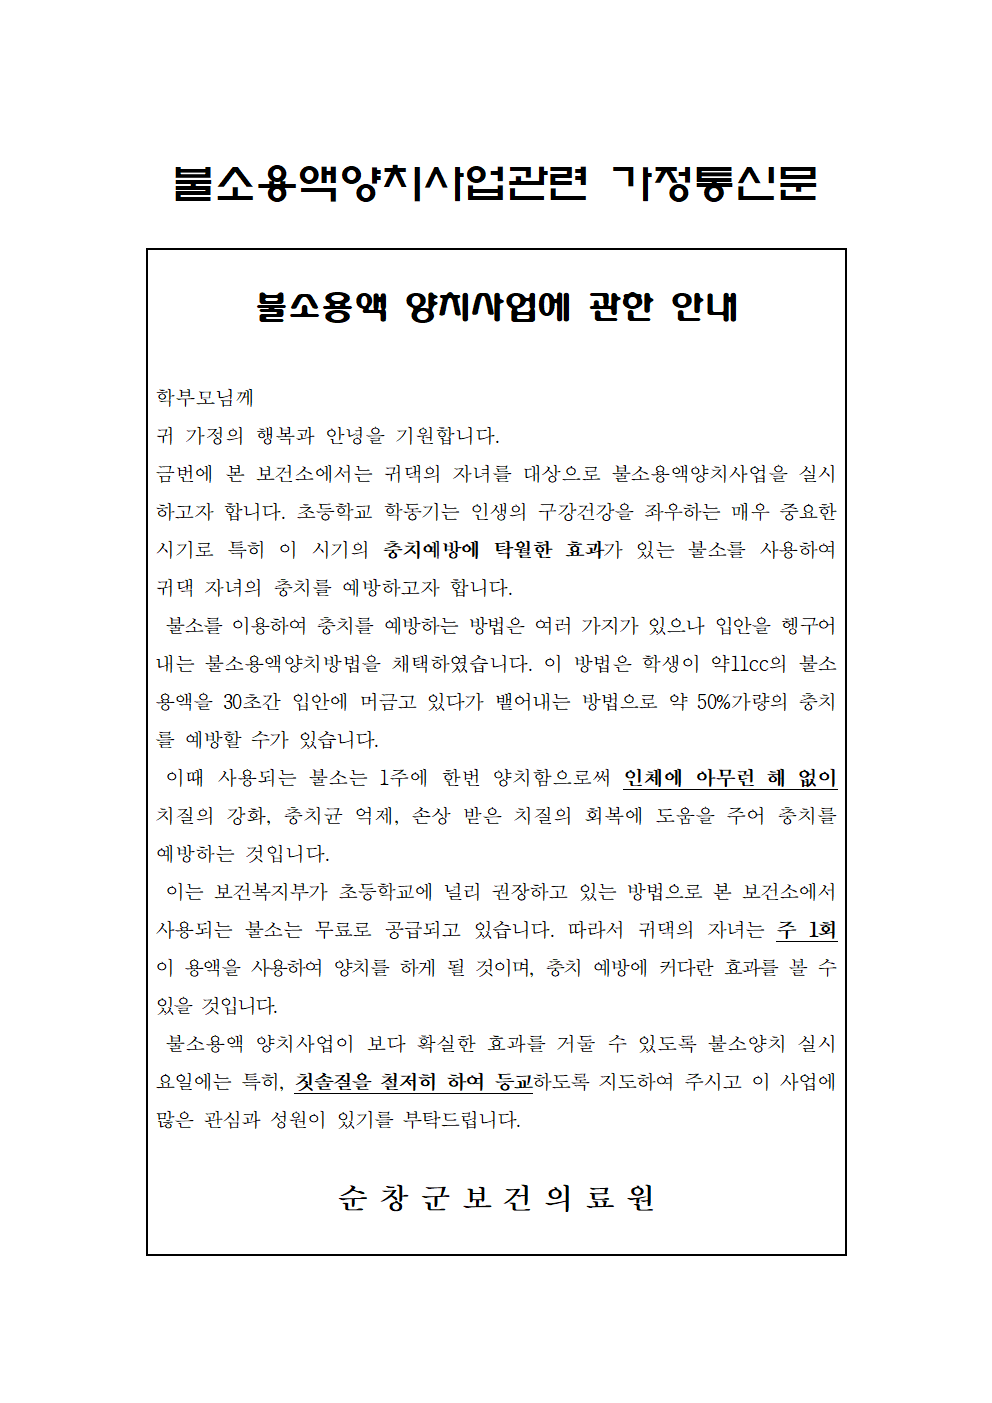 순창보건의료원-불소용액양치사업관련 가정통신문001